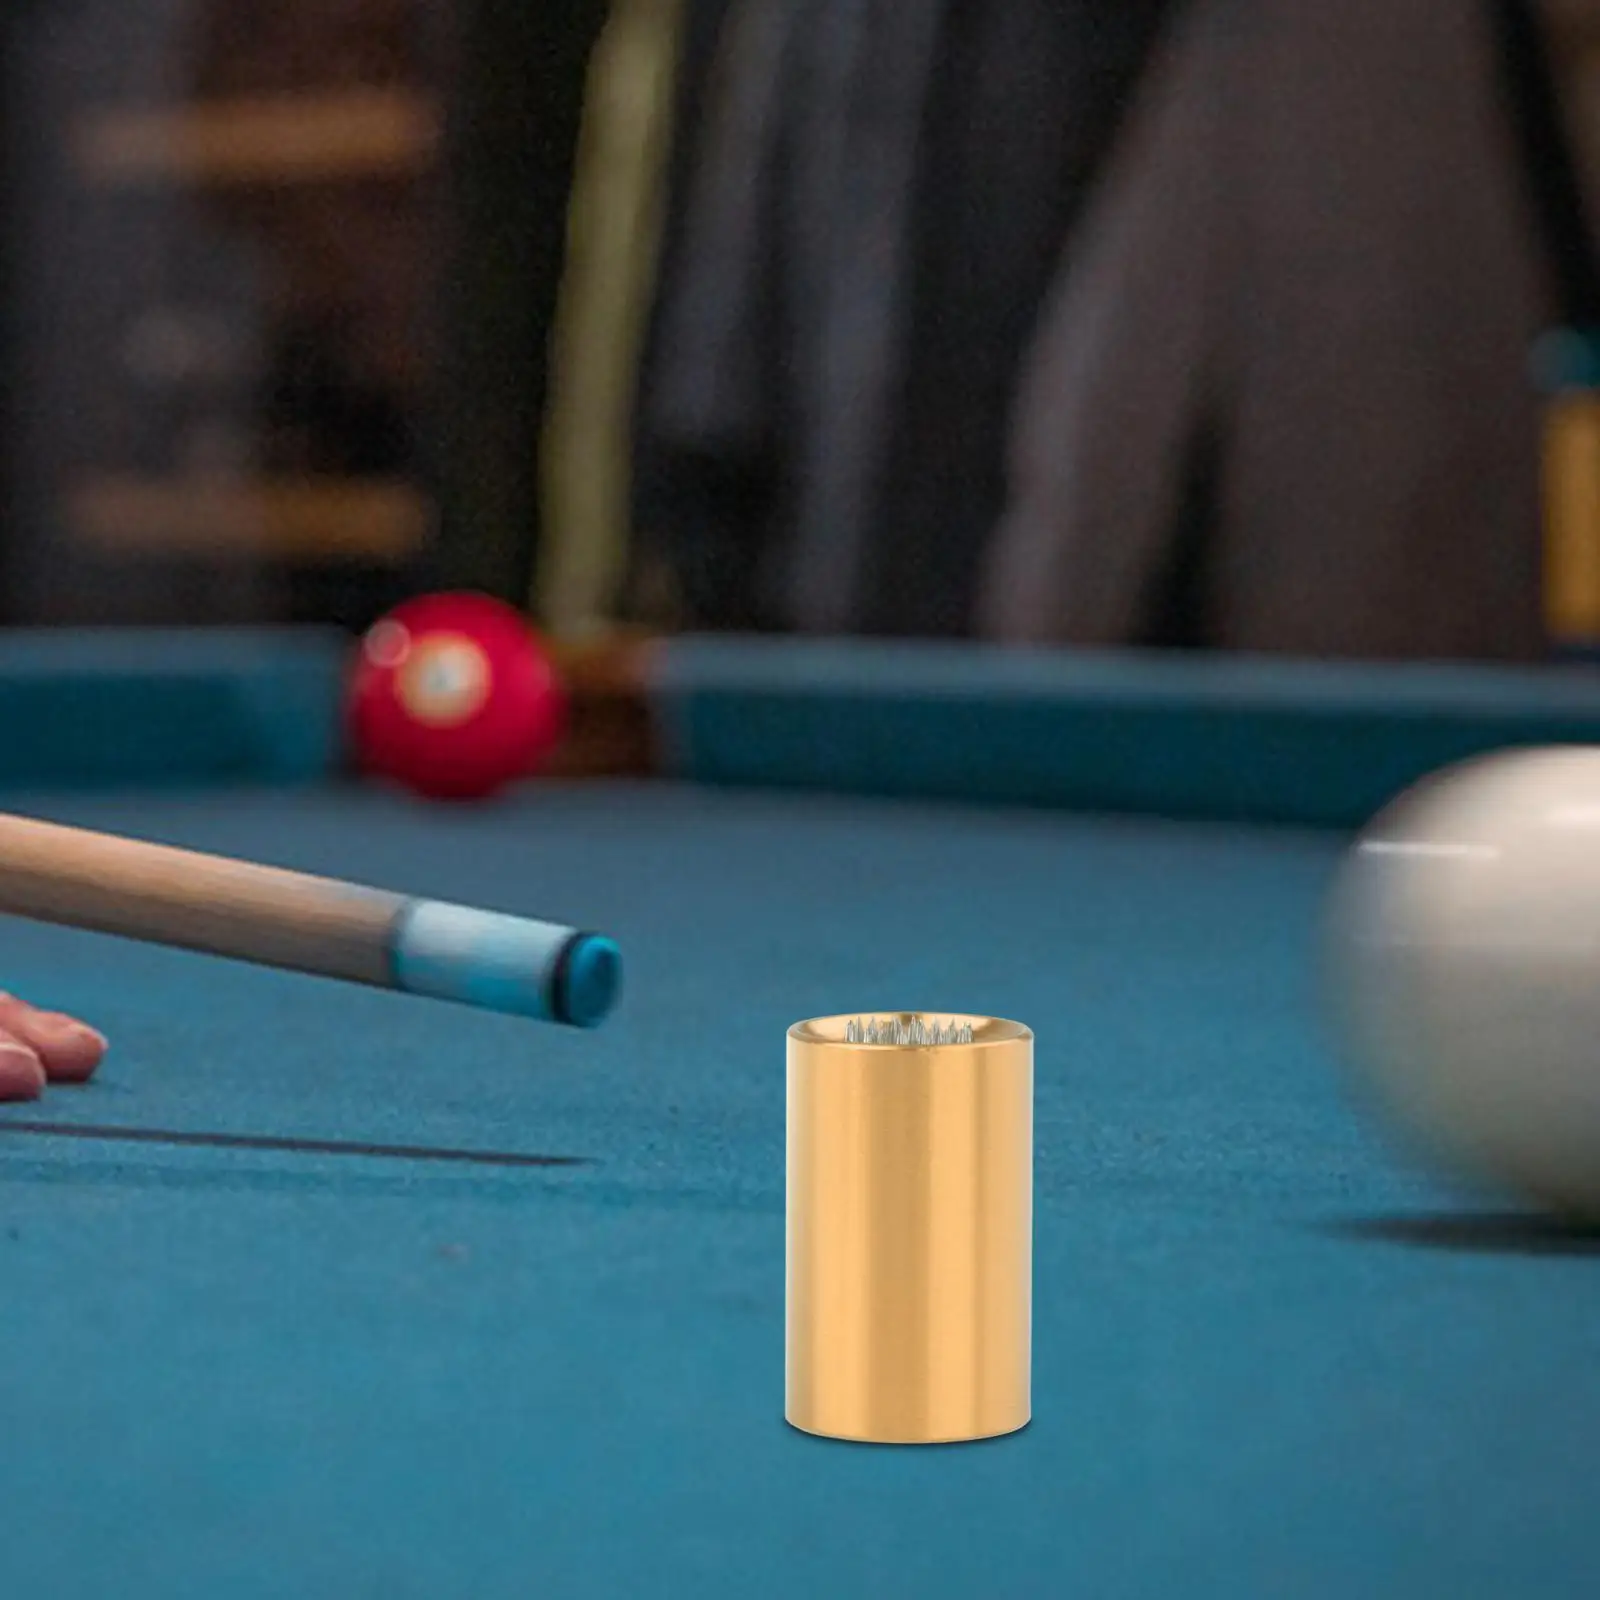 Snooker Cue Tip Shaper Pool Cue Tip Repair Tool 2 in 1 Multipurpose Premium Cue Stick Shaper Aerator Billiards Accessories